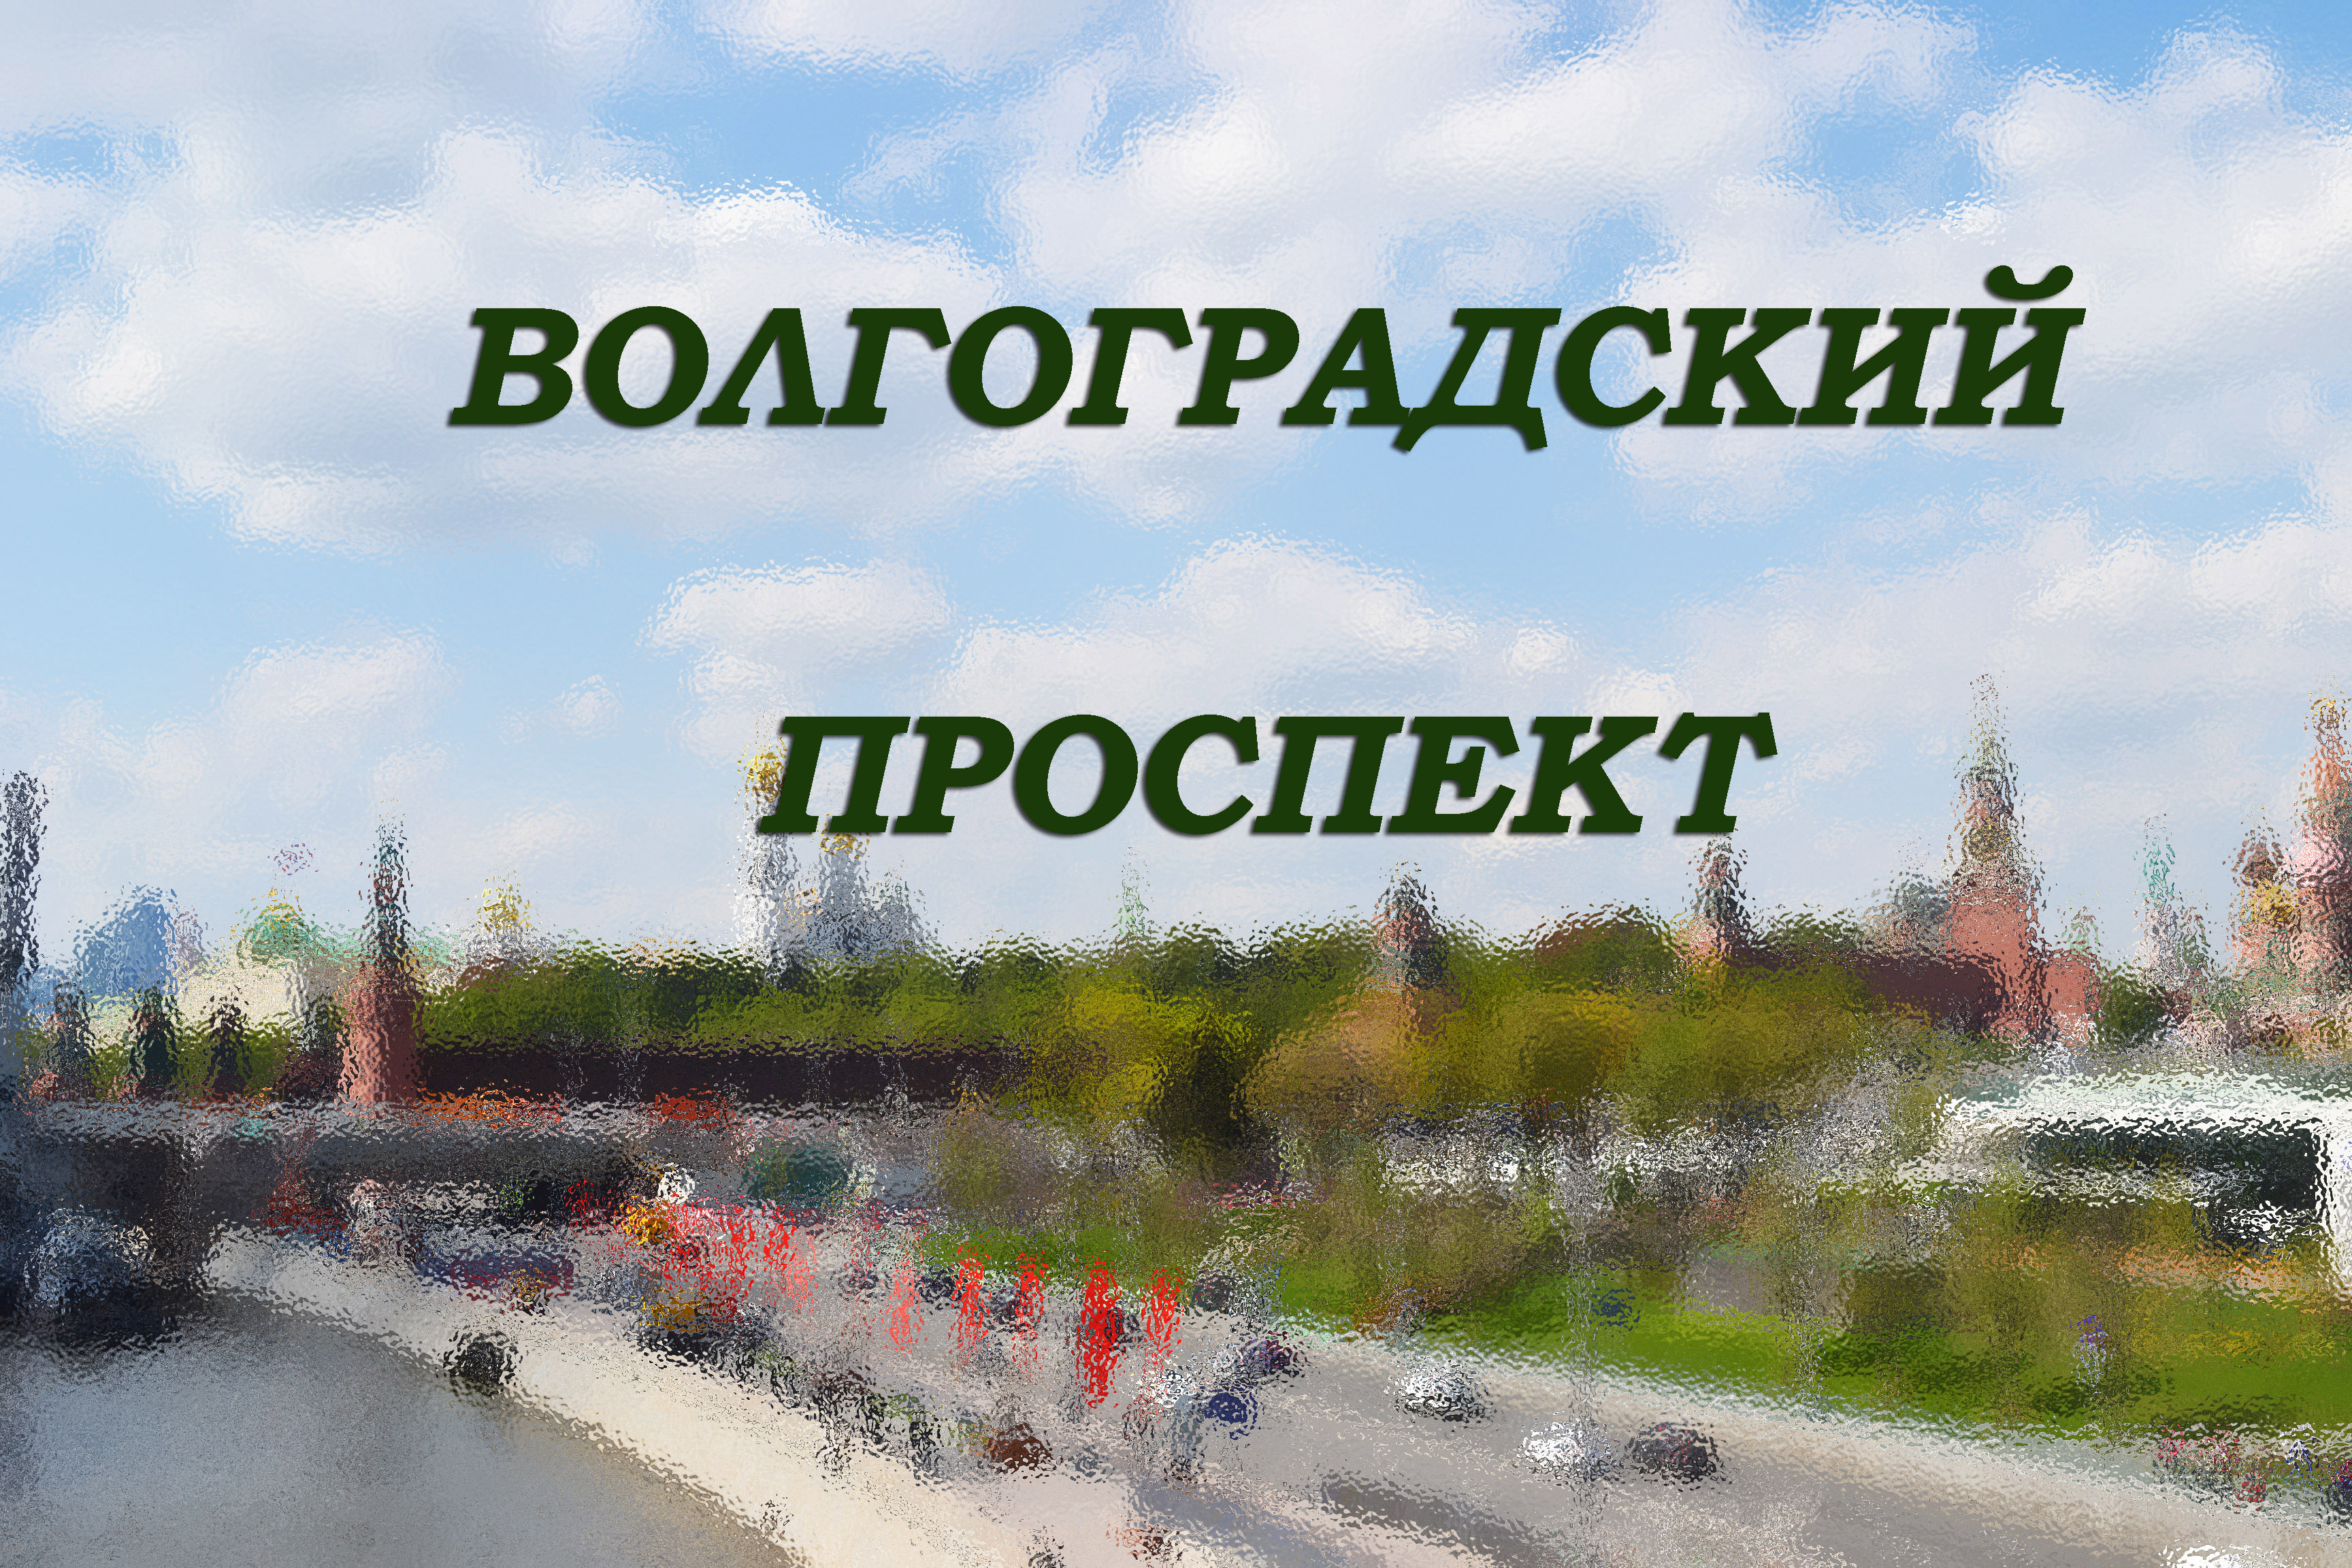 Интересное репортаж про Волгоградский проспект в Мскве